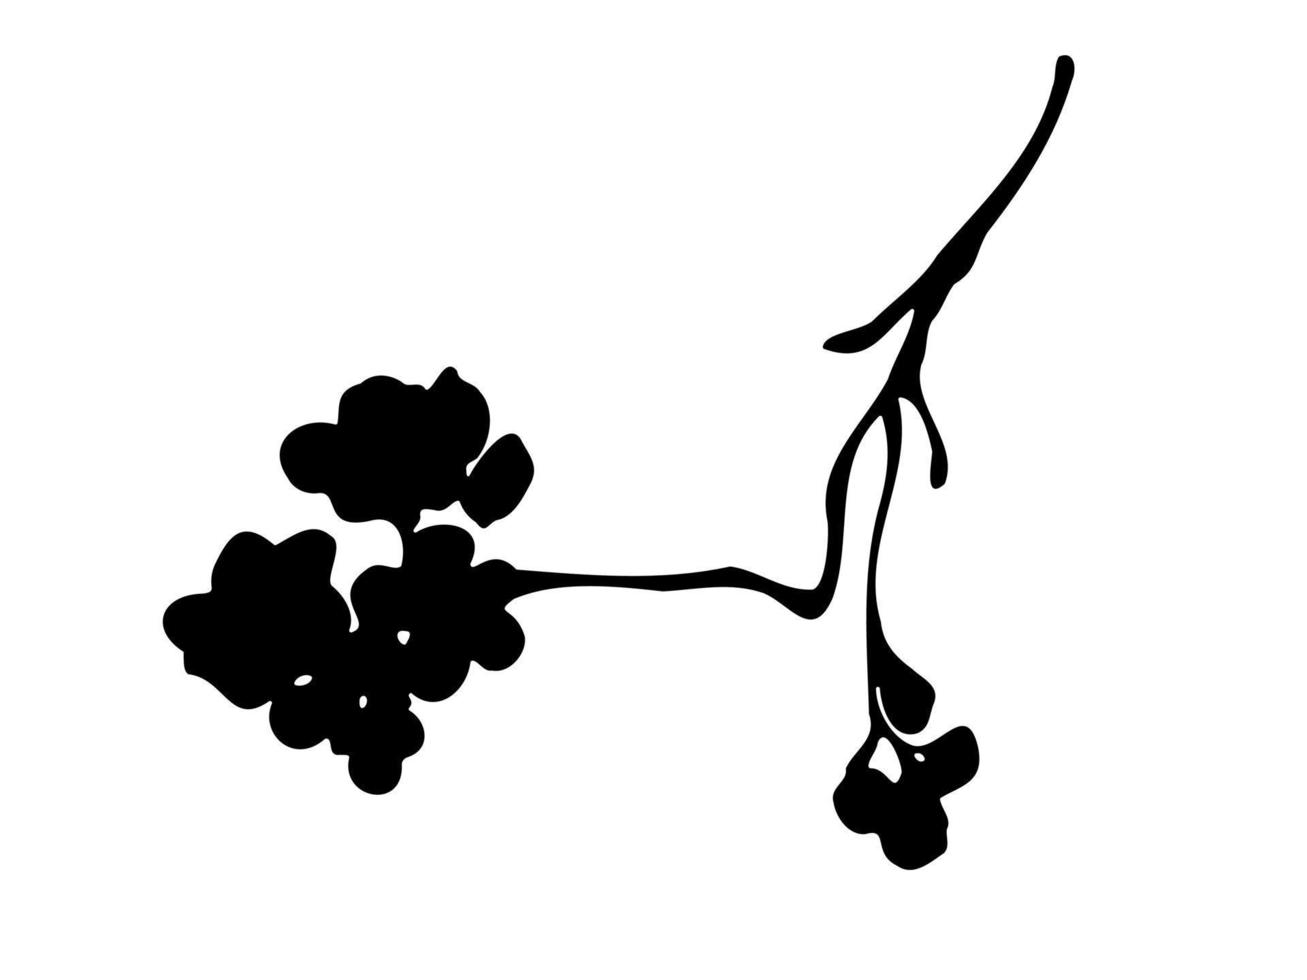 silueta de rama de flor de cerezo dibujada a mano sobre fondo blanco. vector